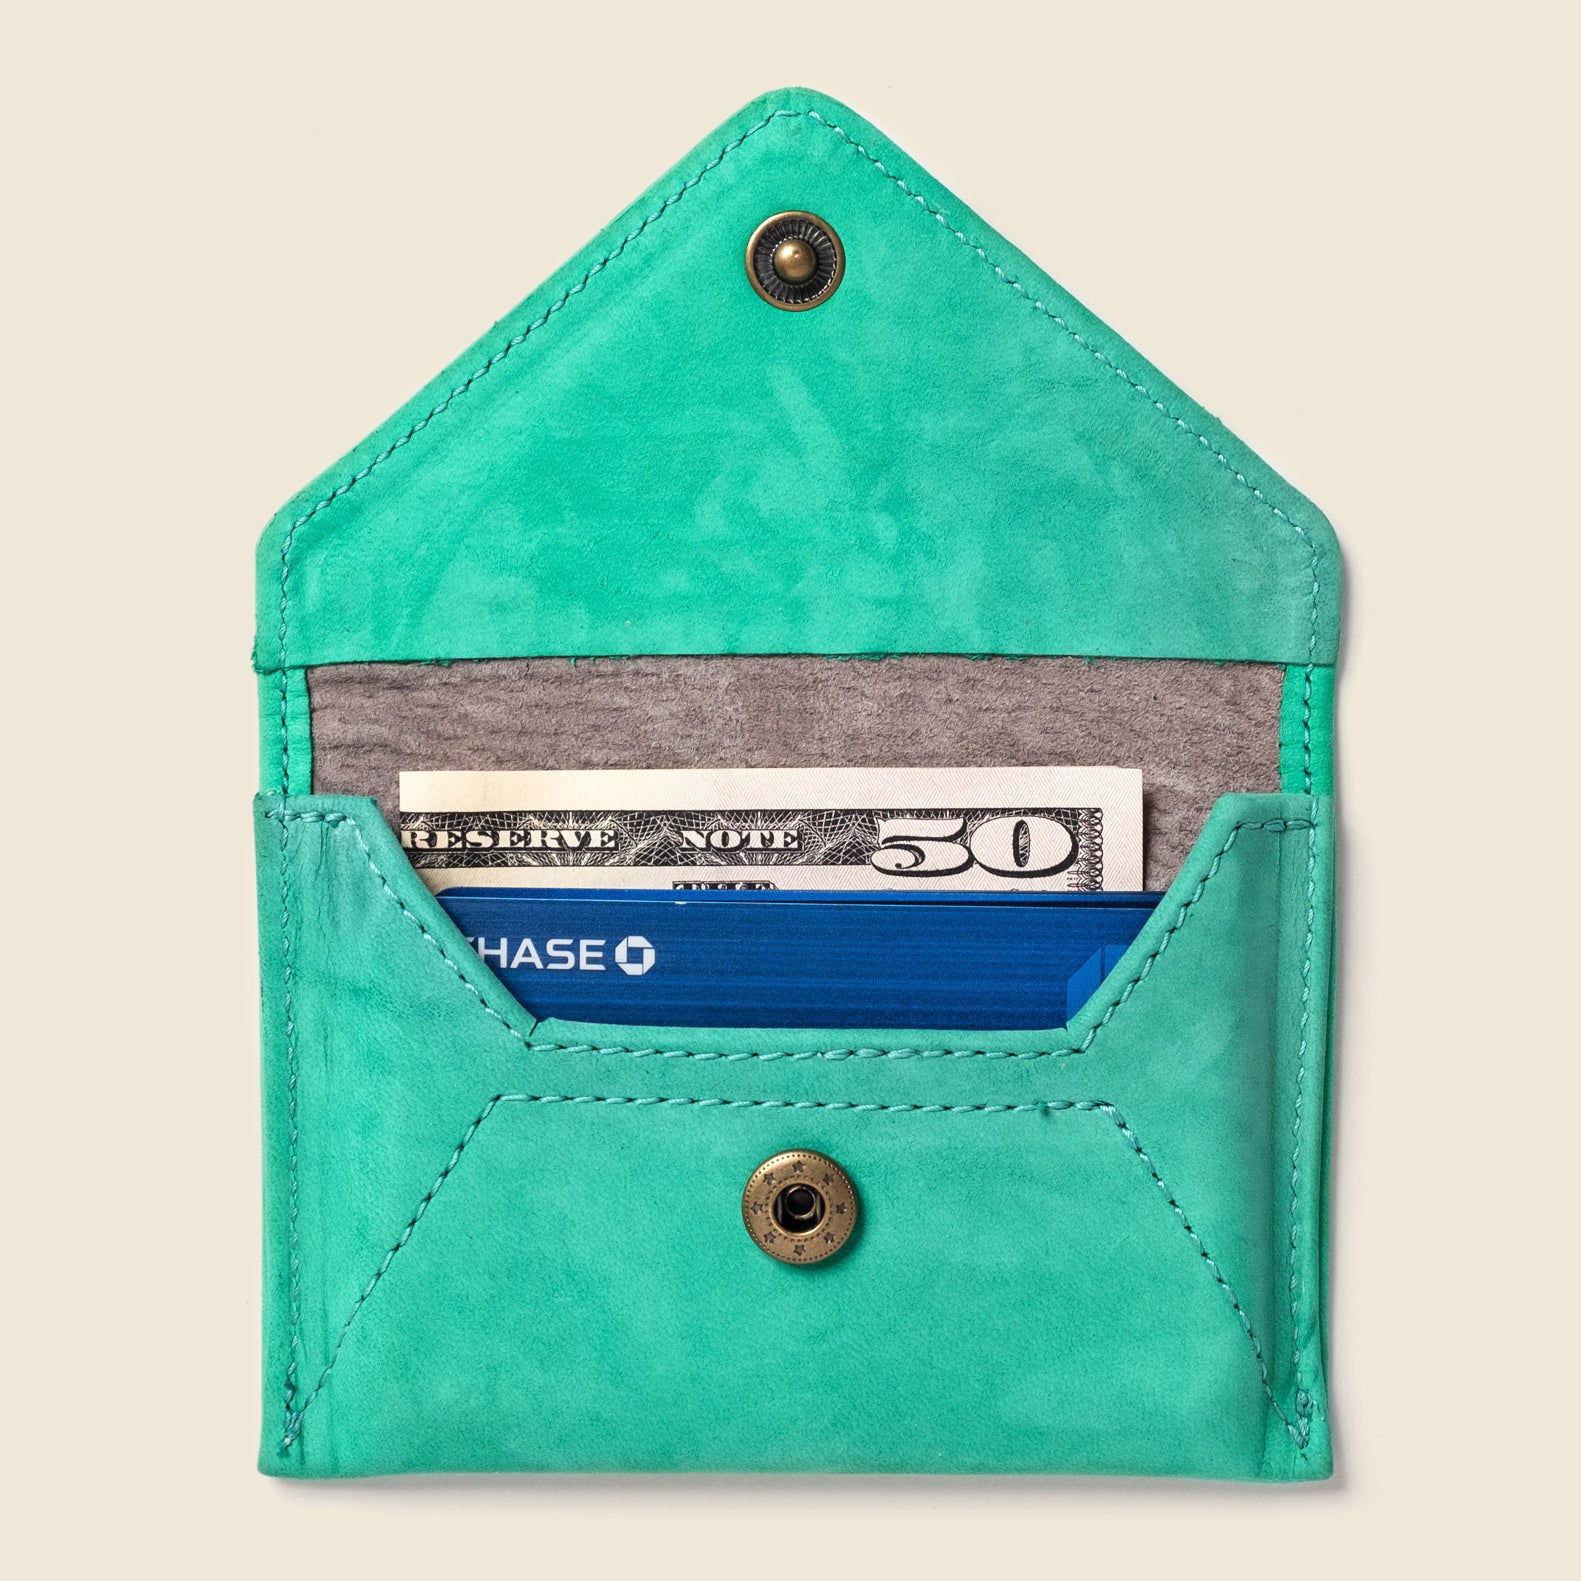 Green leather cardholder wallet